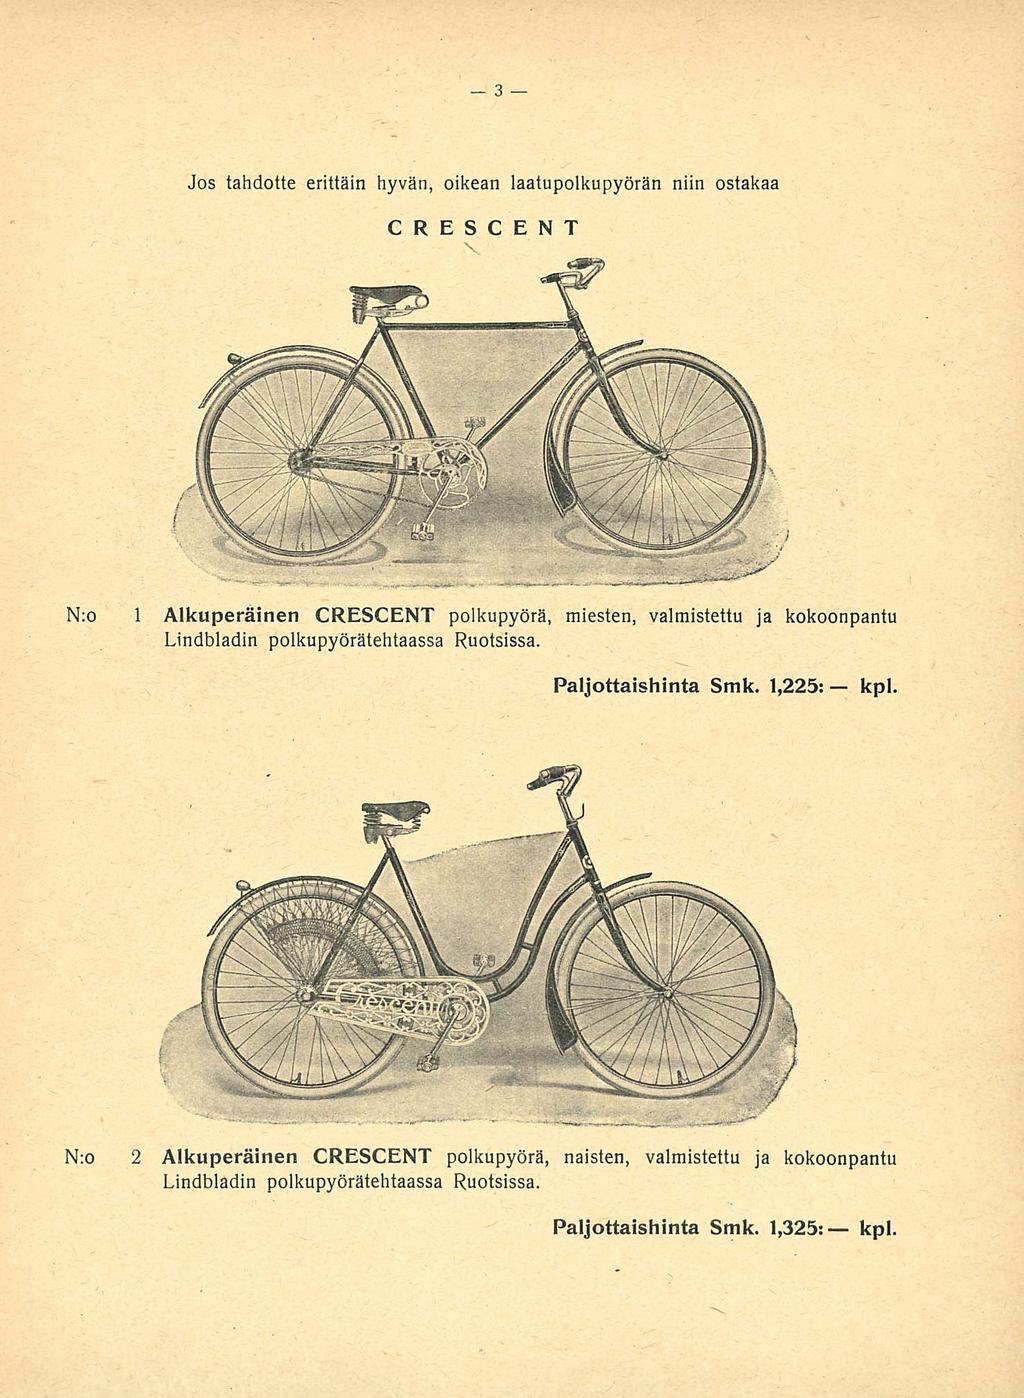 Jos tahdotte erittäin hyvän, oikean laatupolkupyörän niin ostakaa CRESCENT N:o 1 Alkuperäinen CRESCENT polkupyörä, miesten, valmistettu ja kokoonpantu Lindbladin polkupyörätehtaassa